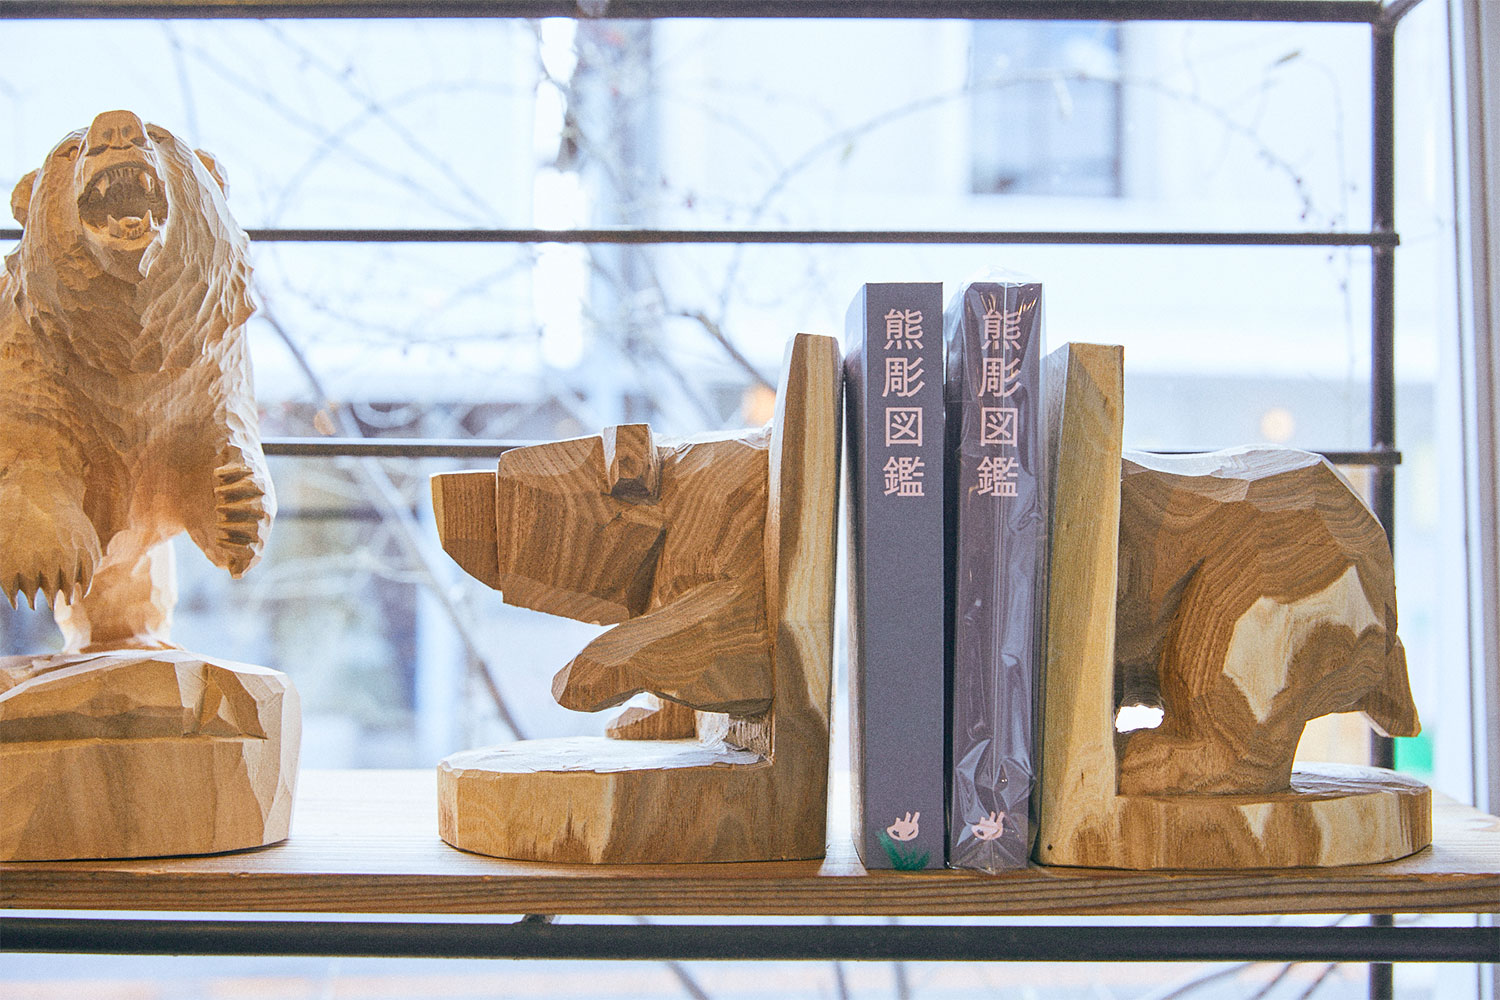 木彫りの熊を前足部分と後ろ足部分で前後に分けてブックエンドにした佐藤憲治氏の作品